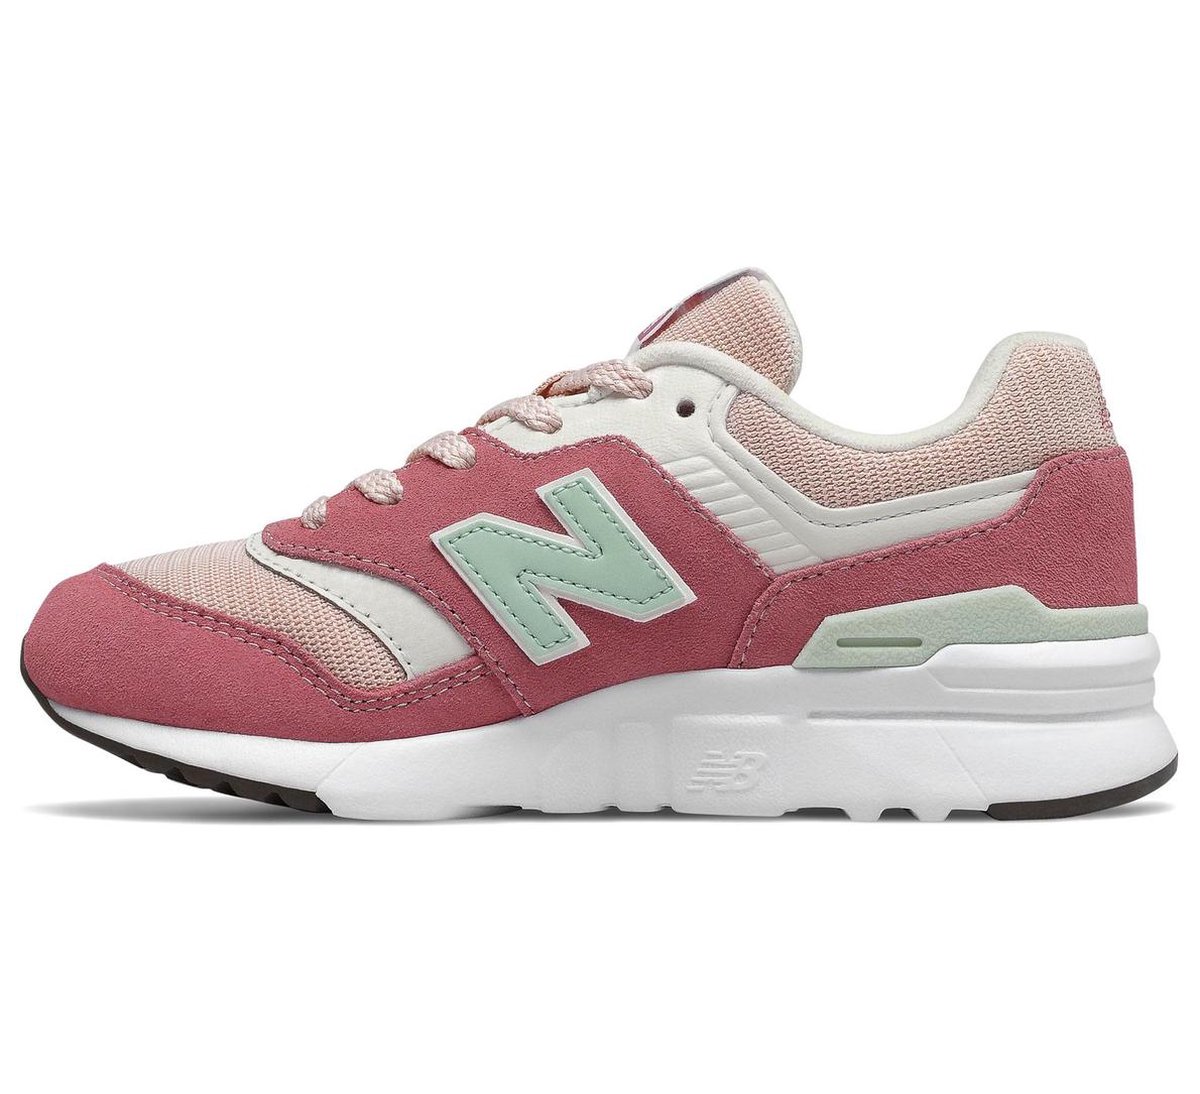 Commandant Voordracht afdeling New Balance 997 Sneaker Junior Sneakers - Maat 35 - Meisjes -  Roze/wit/groen | bol.com